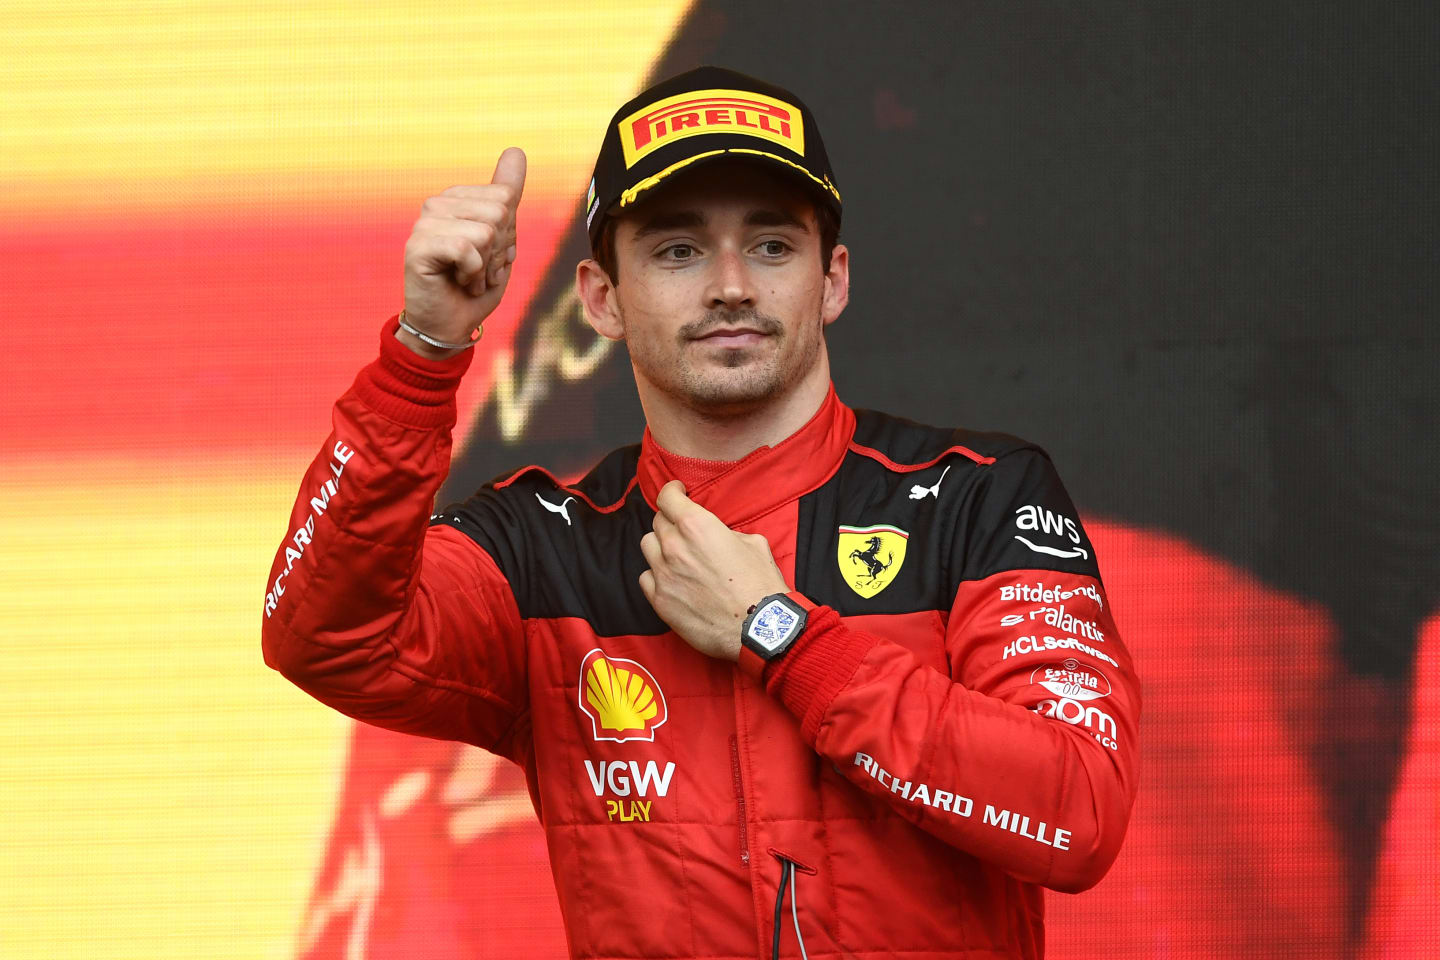 BAKU, AZERBAIJAN - APRIL 30: Third placed Charles Leclerc of Monaco and Ferrari celebrates on the